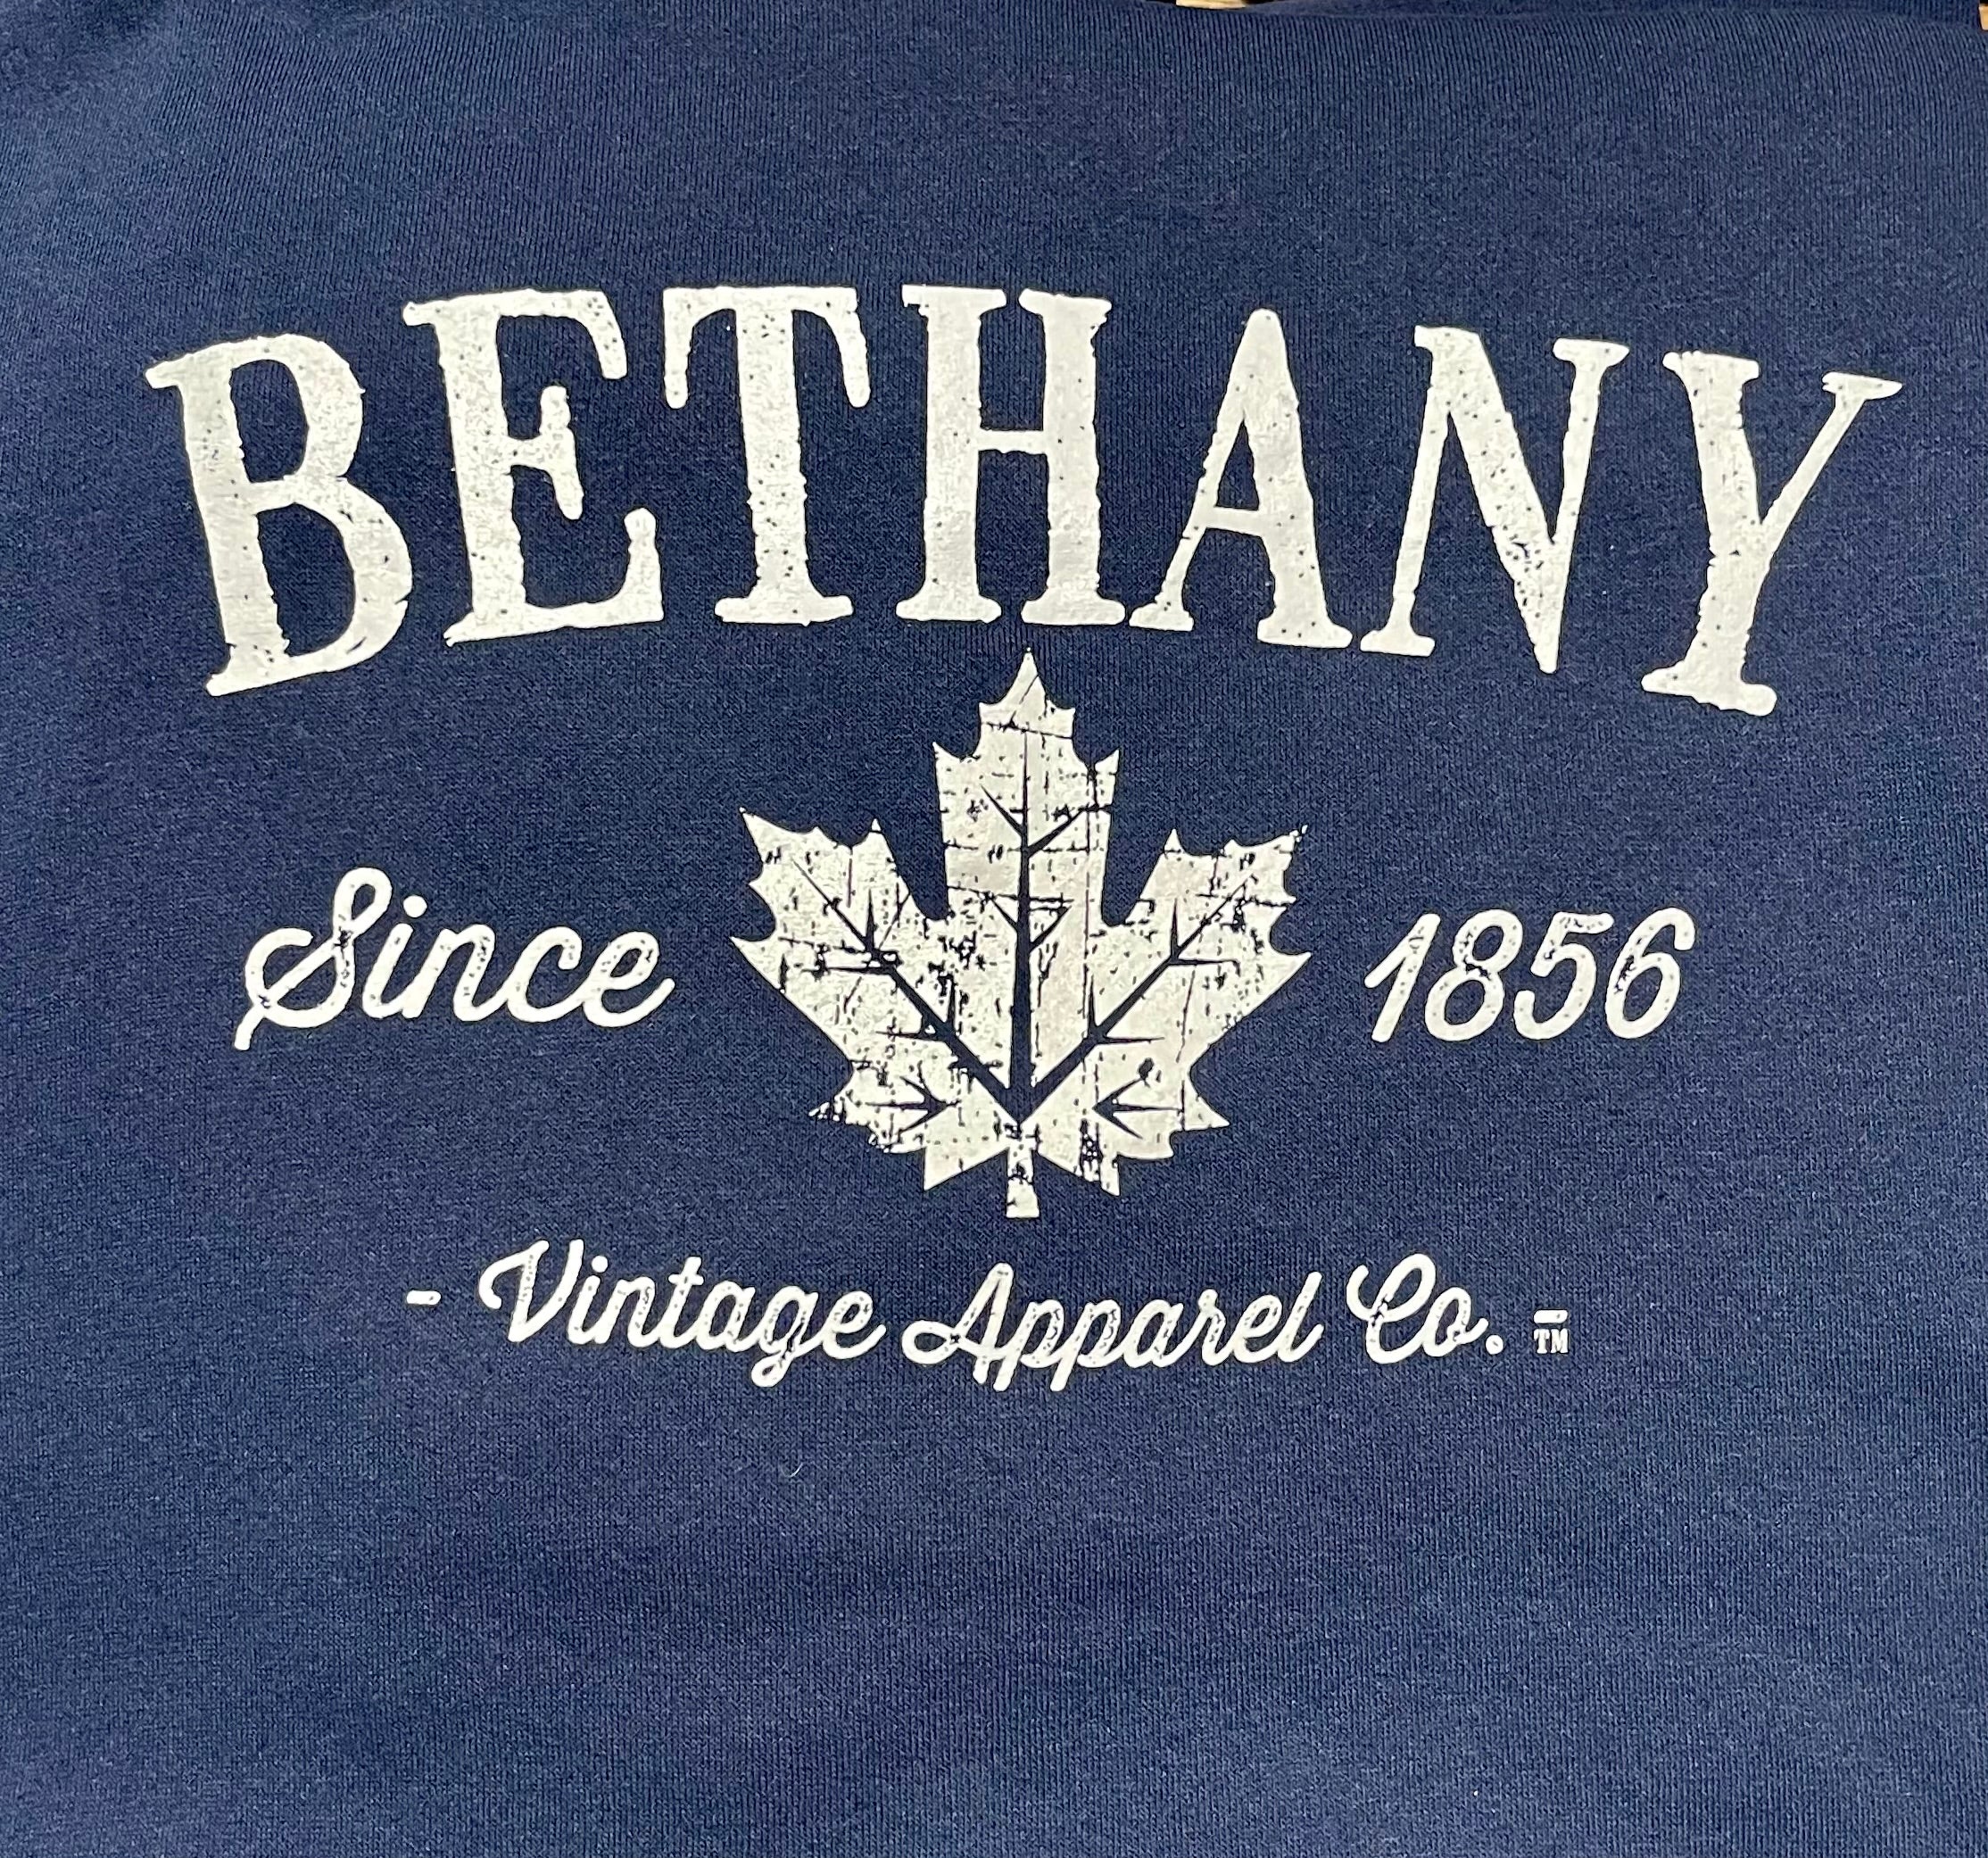 'BETHANY' Hoody